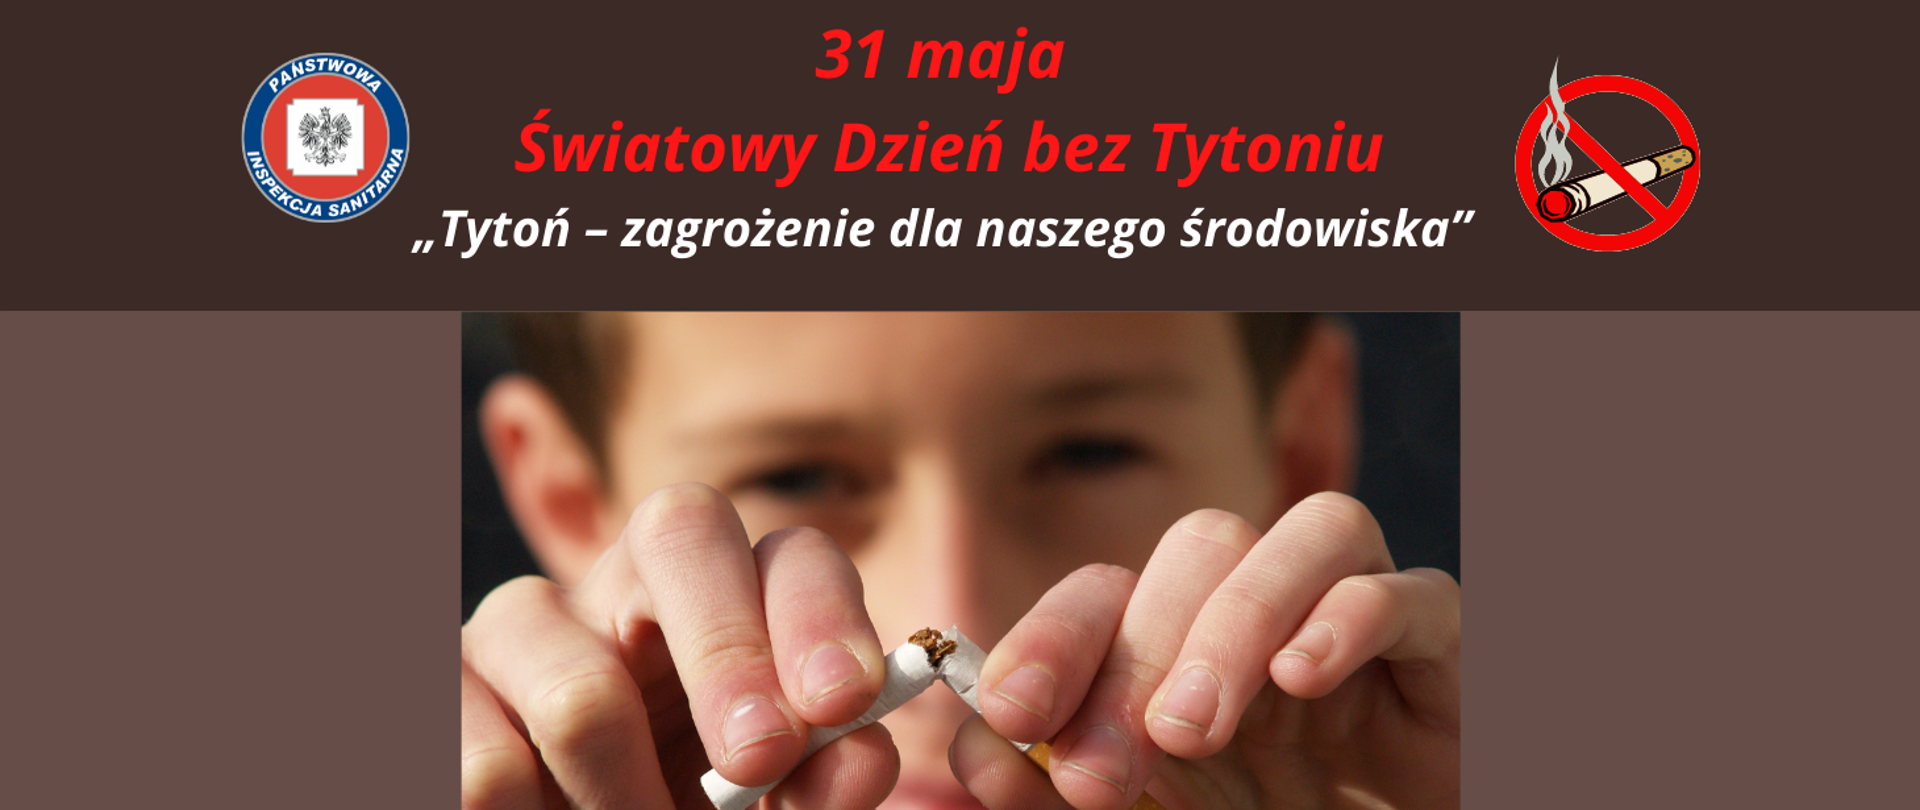 Światowy Dzień Bez Tytoniu - logo